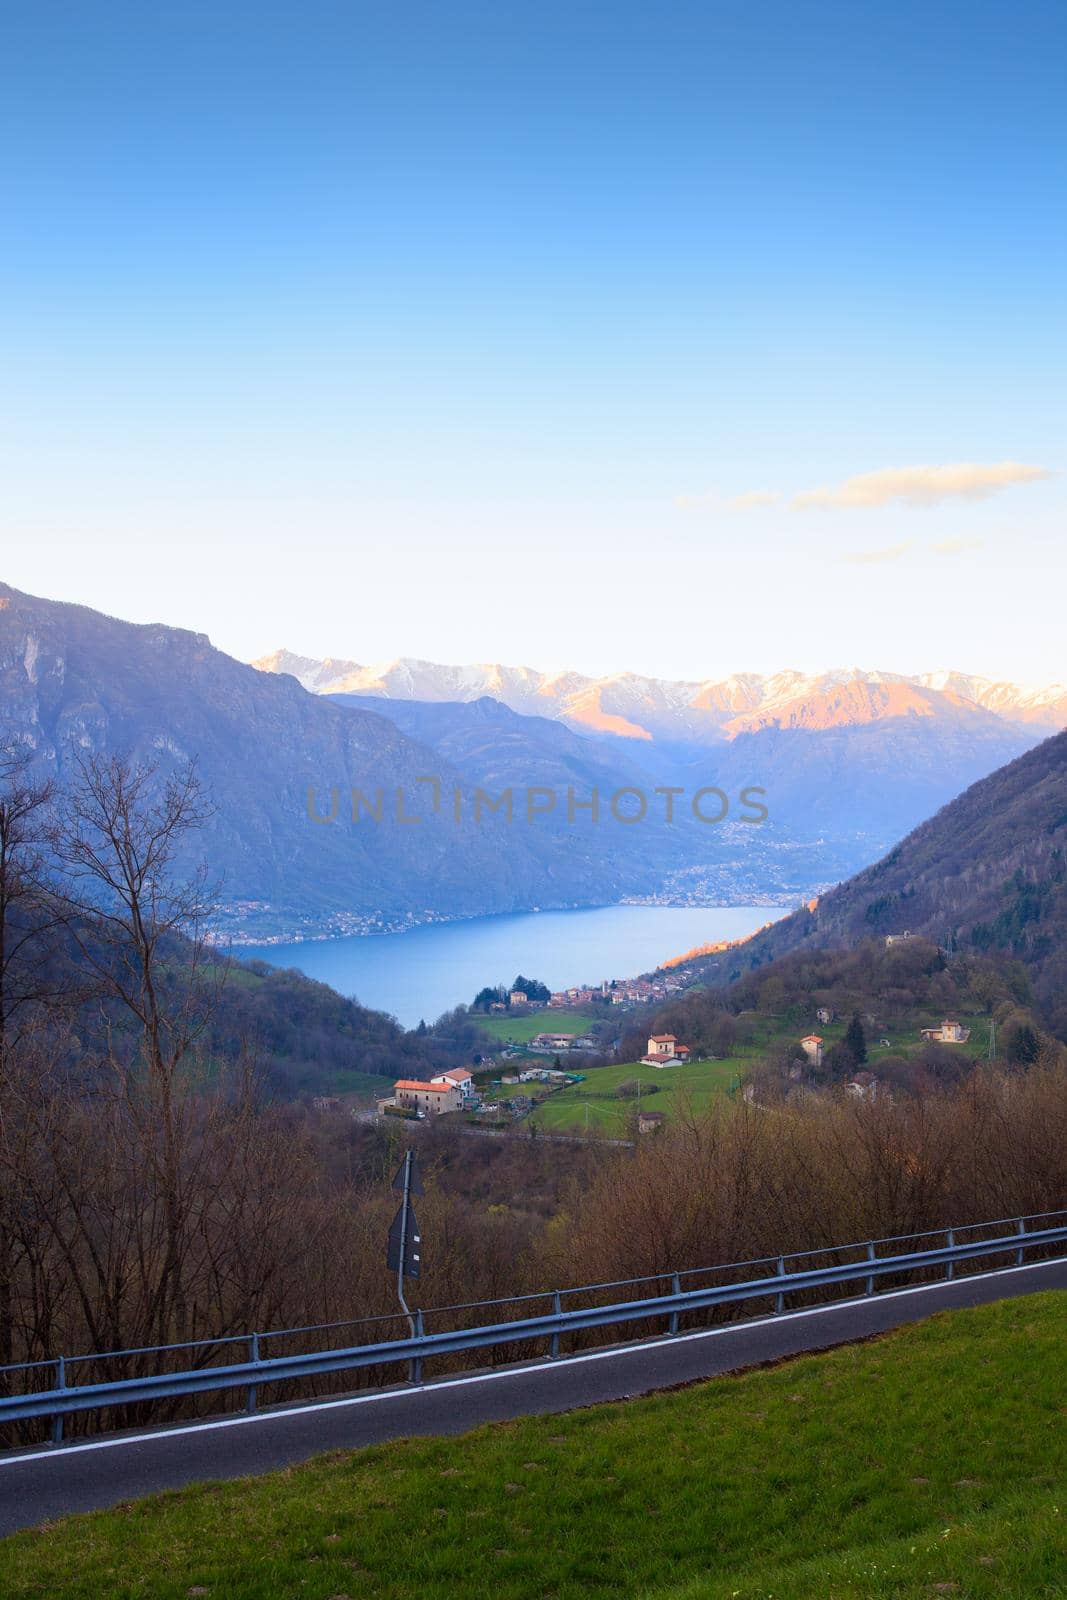 View of Lugano lake, Switzerland and Italy